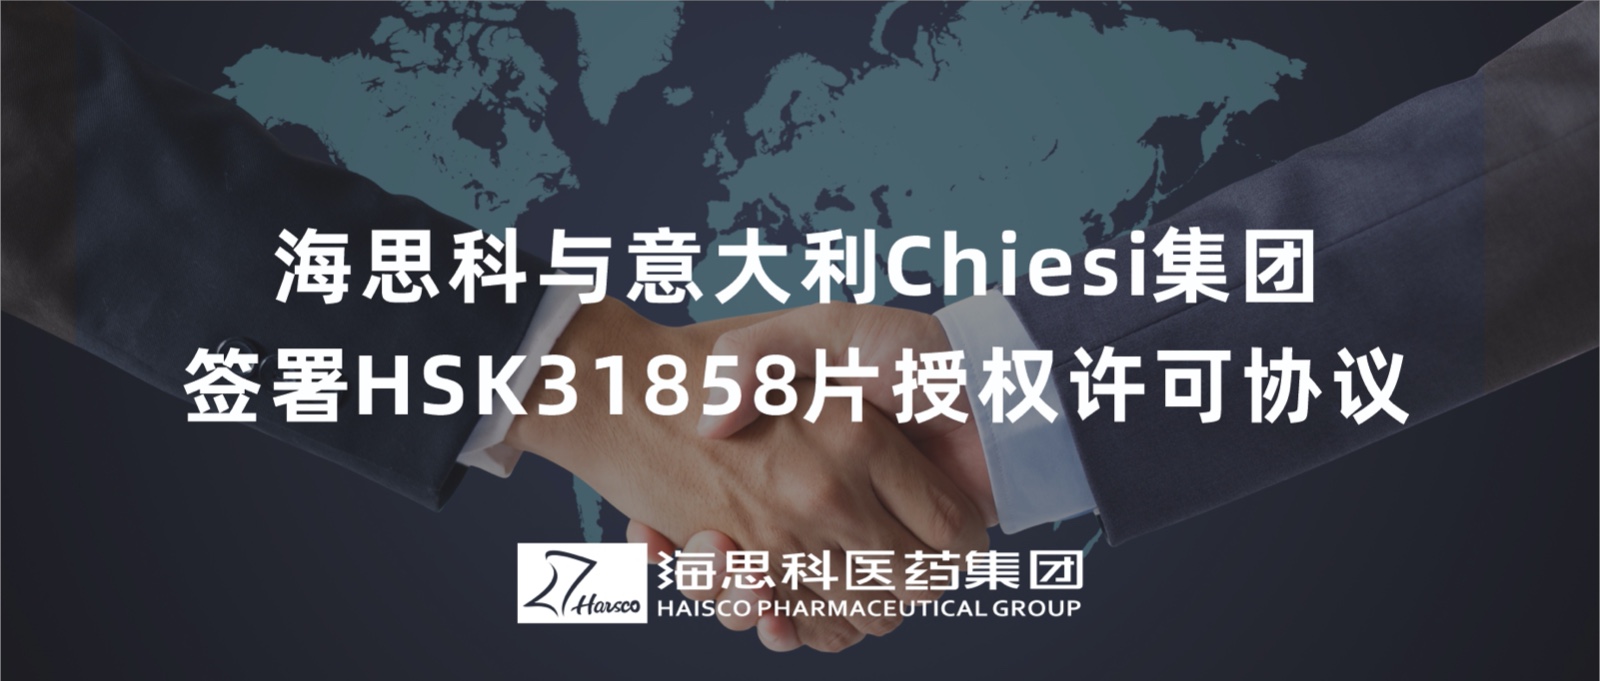 云顶国际官网与意大利Chiesi集团签署HSK31858片授权许可协议